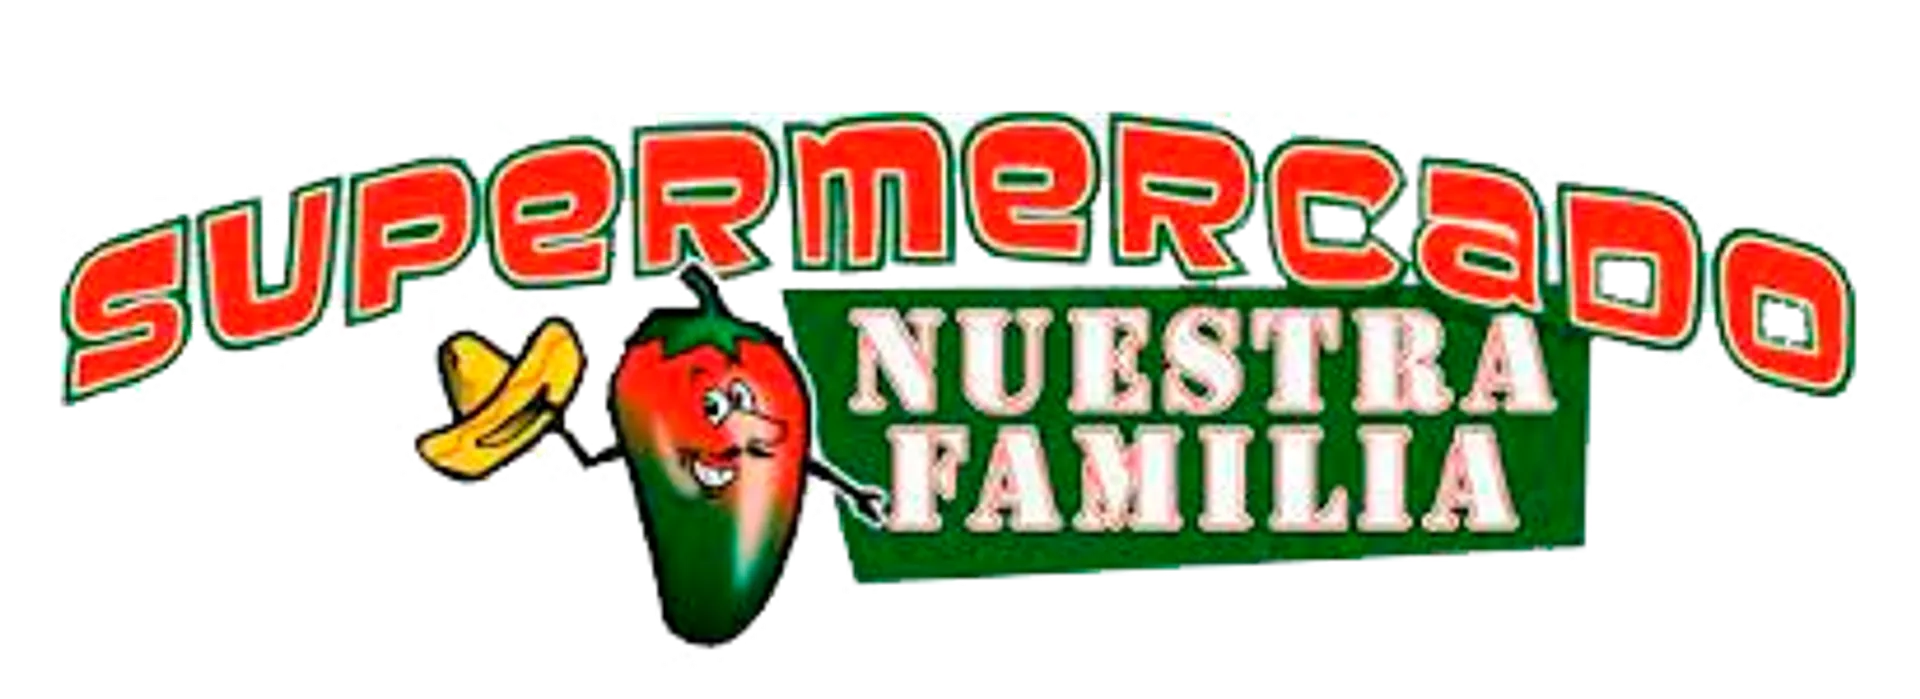 SUPERMERCADO NUESTRA FAMILIA logo de catálogo